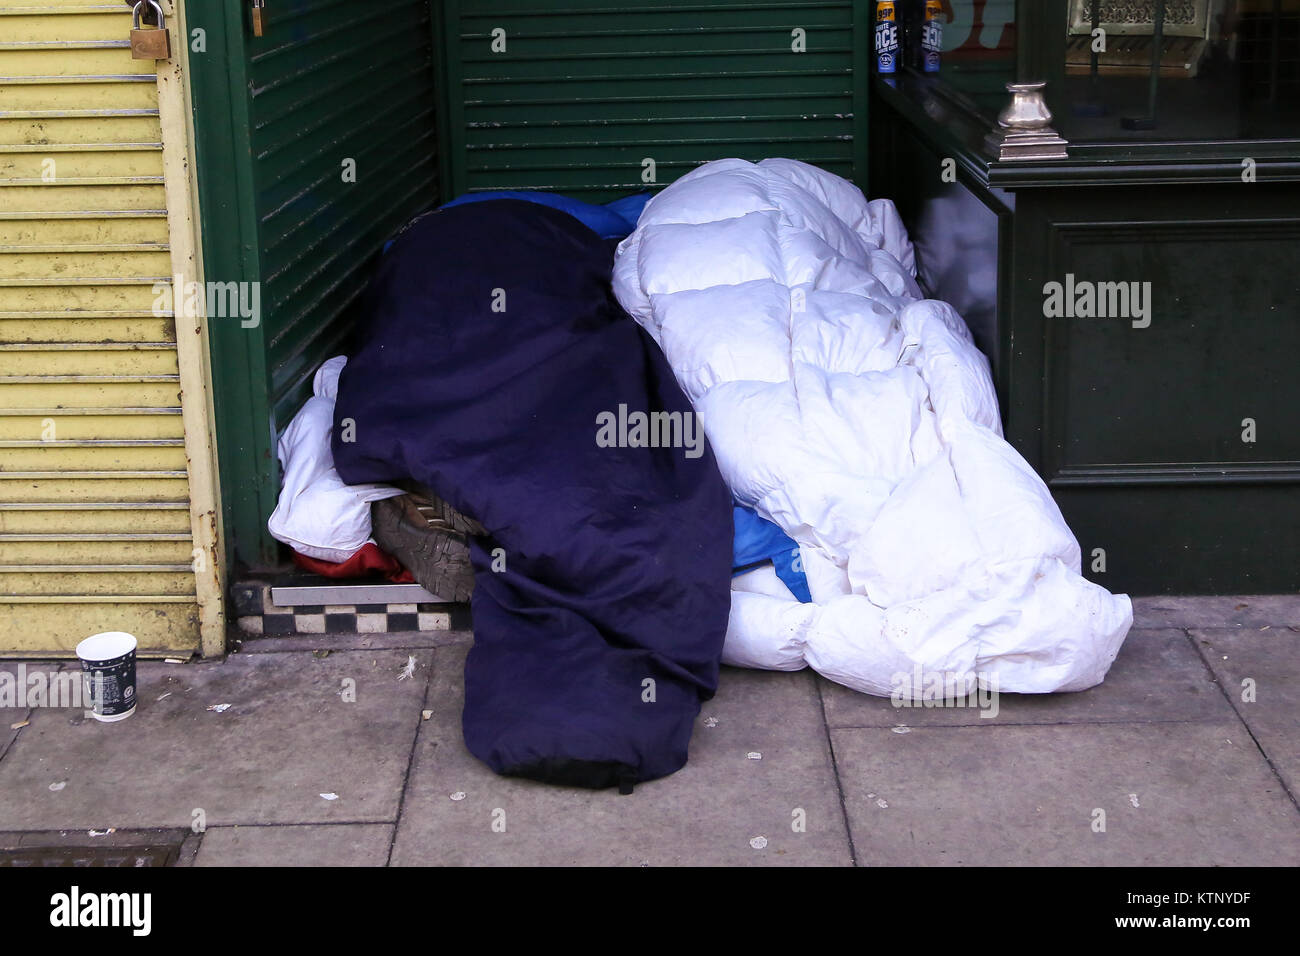 Le nord de Londres, Royaume-Uni. 28 Dec, 2017. Deux personnes de dormir sur un sol très étroite avec l'écart entre les boutiques dans le nord de Londres après une nuit très froide. Selon le Comité des comptes publics plus de 9 000 personnes sont sans-abri dans les rues. Credit : Dinendra Haria/Alamy Live News Banque D'Images